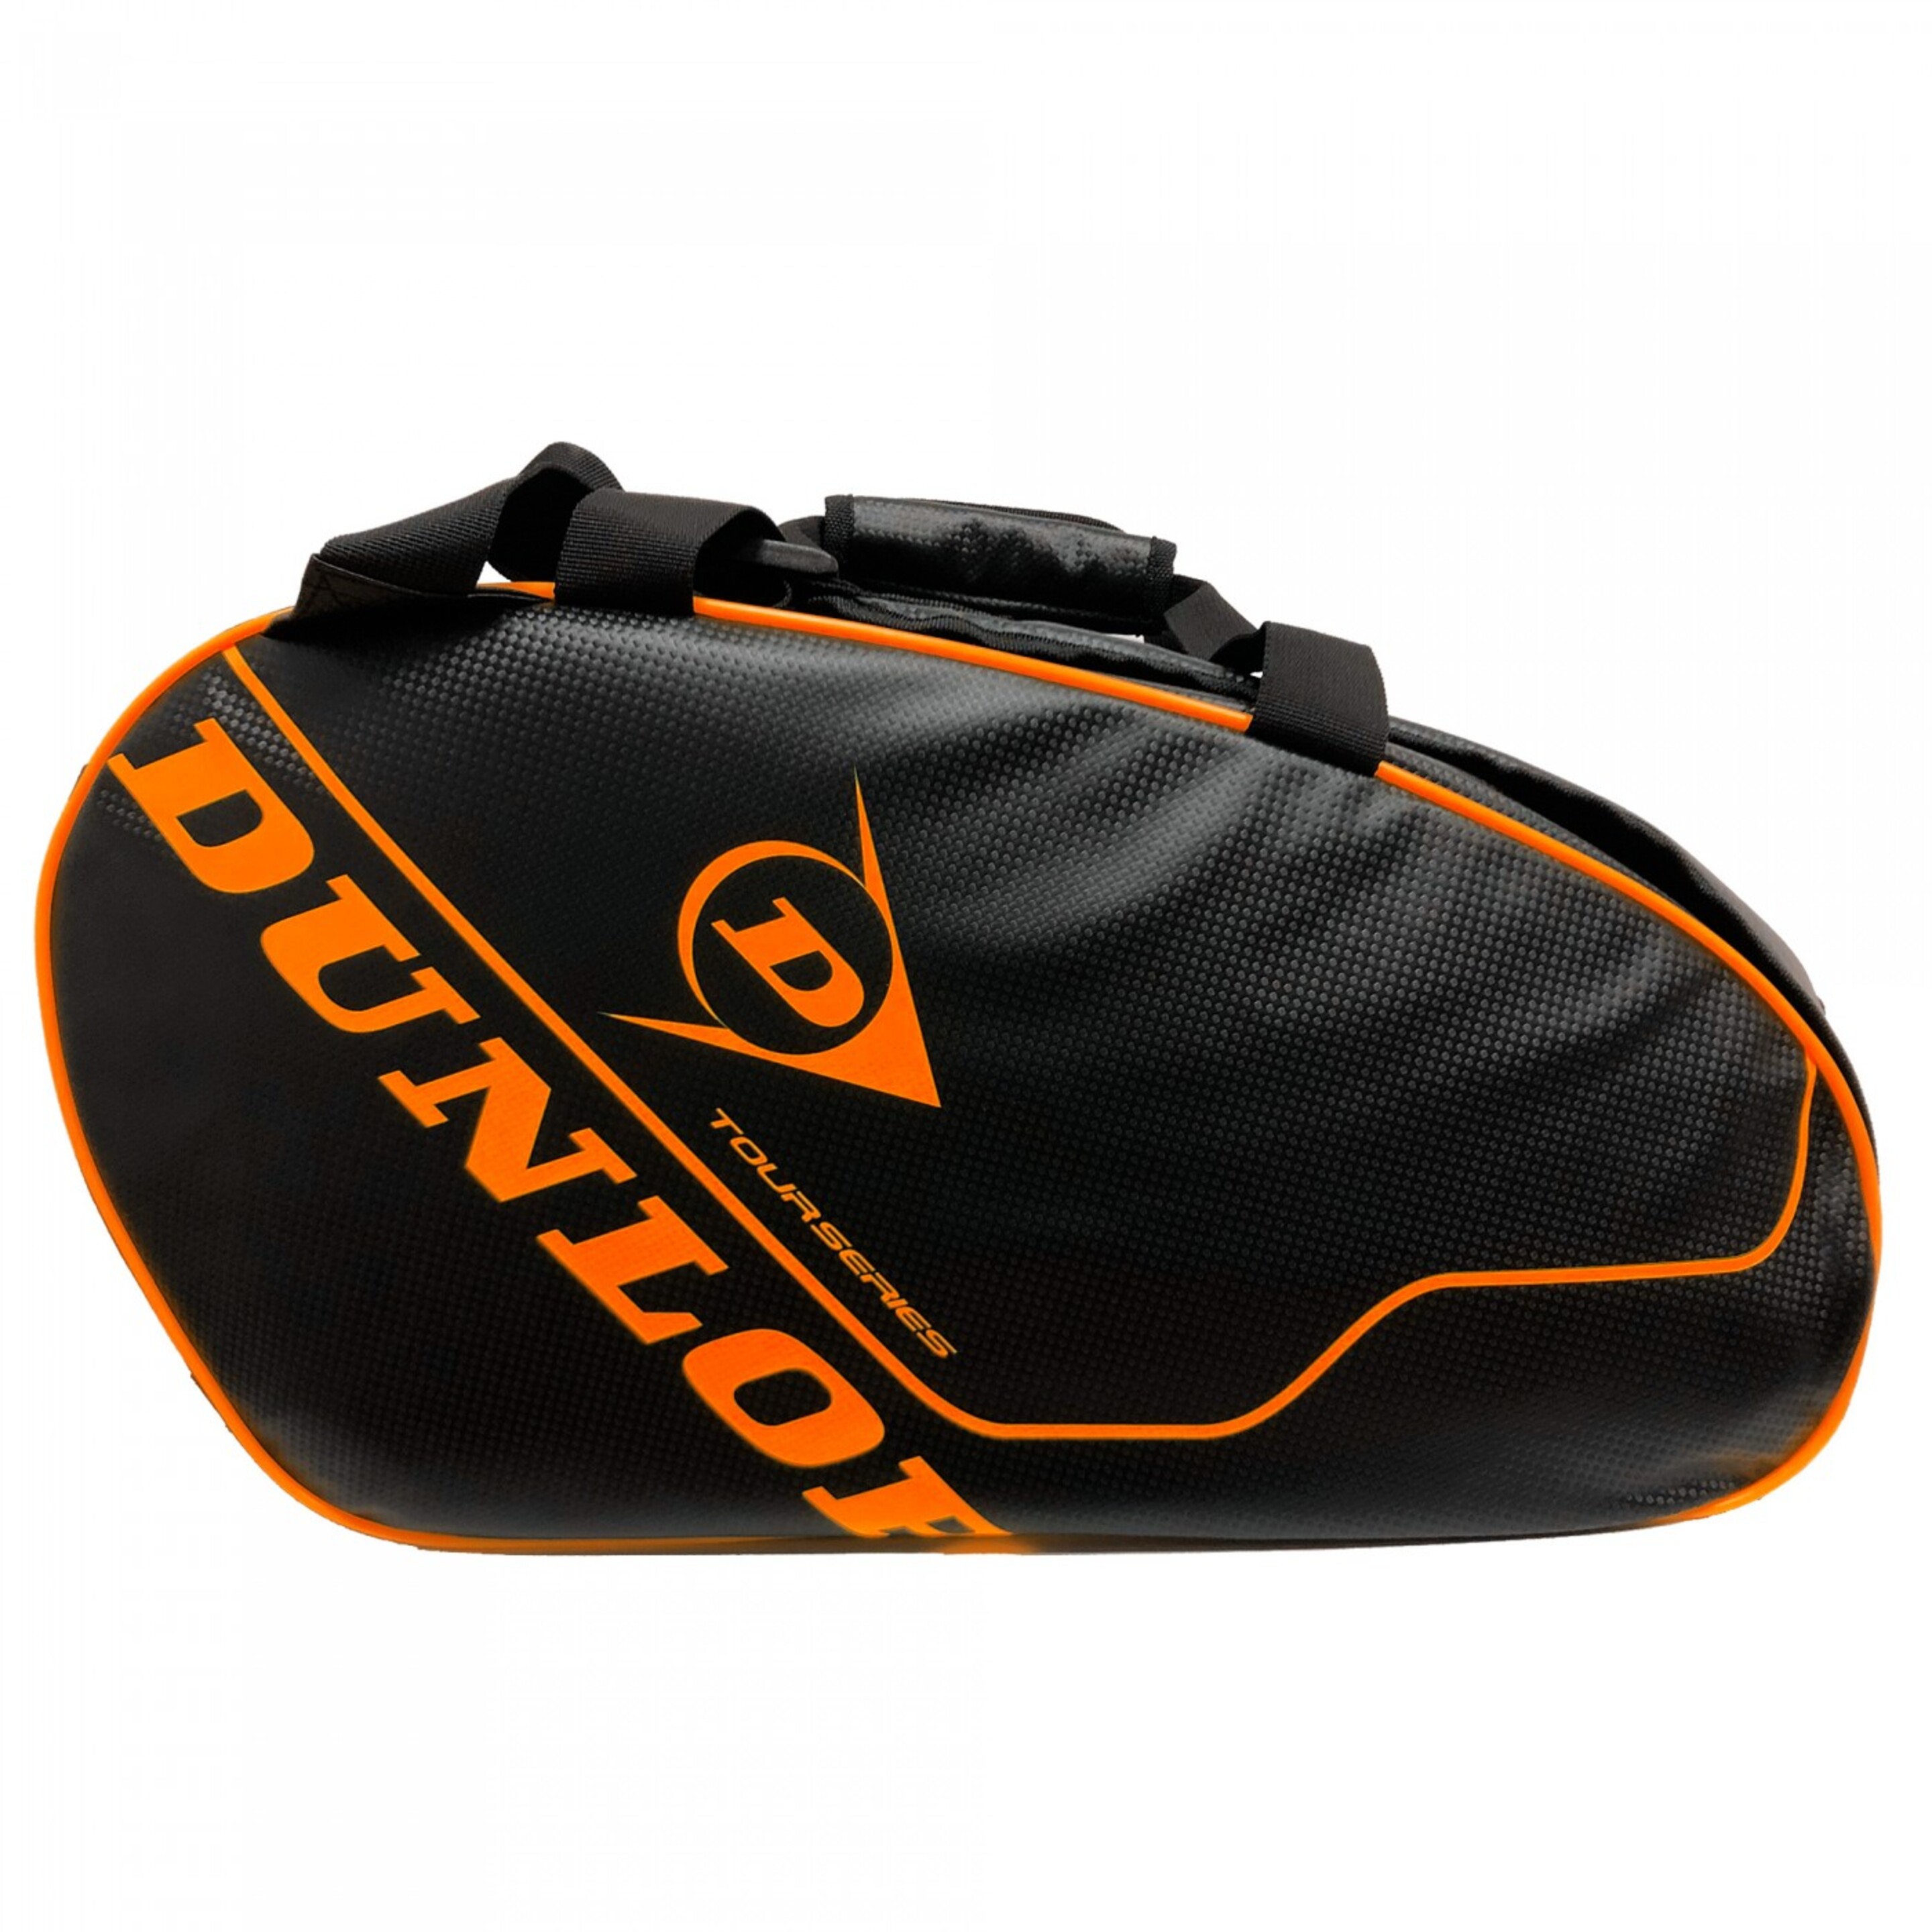 Paletero Dunlop Tour Intro Carbon - negro-naranja - 